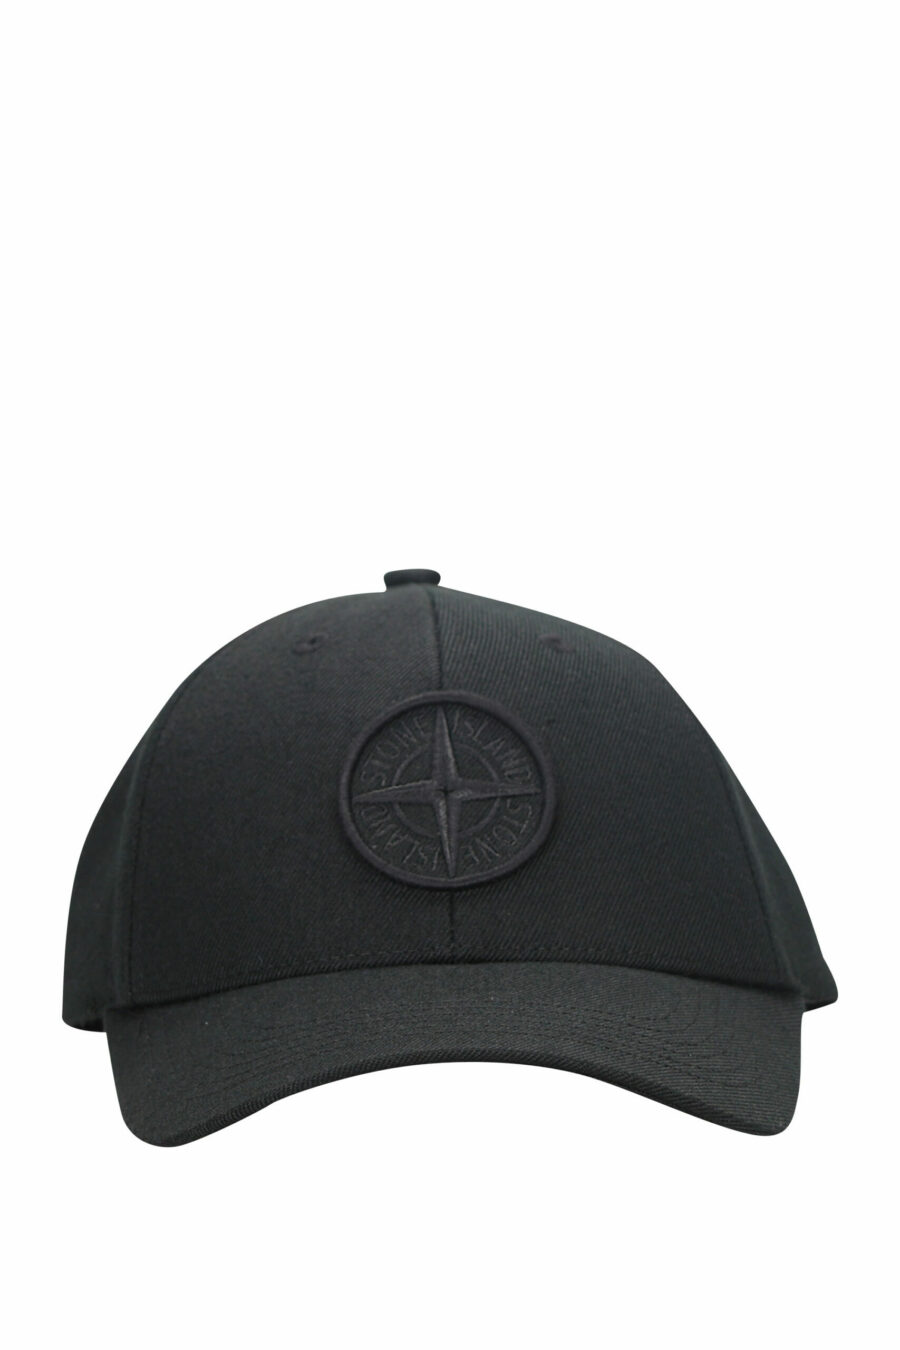 Gorra negra con logo bordado en relieve - 8052572734557 scaled